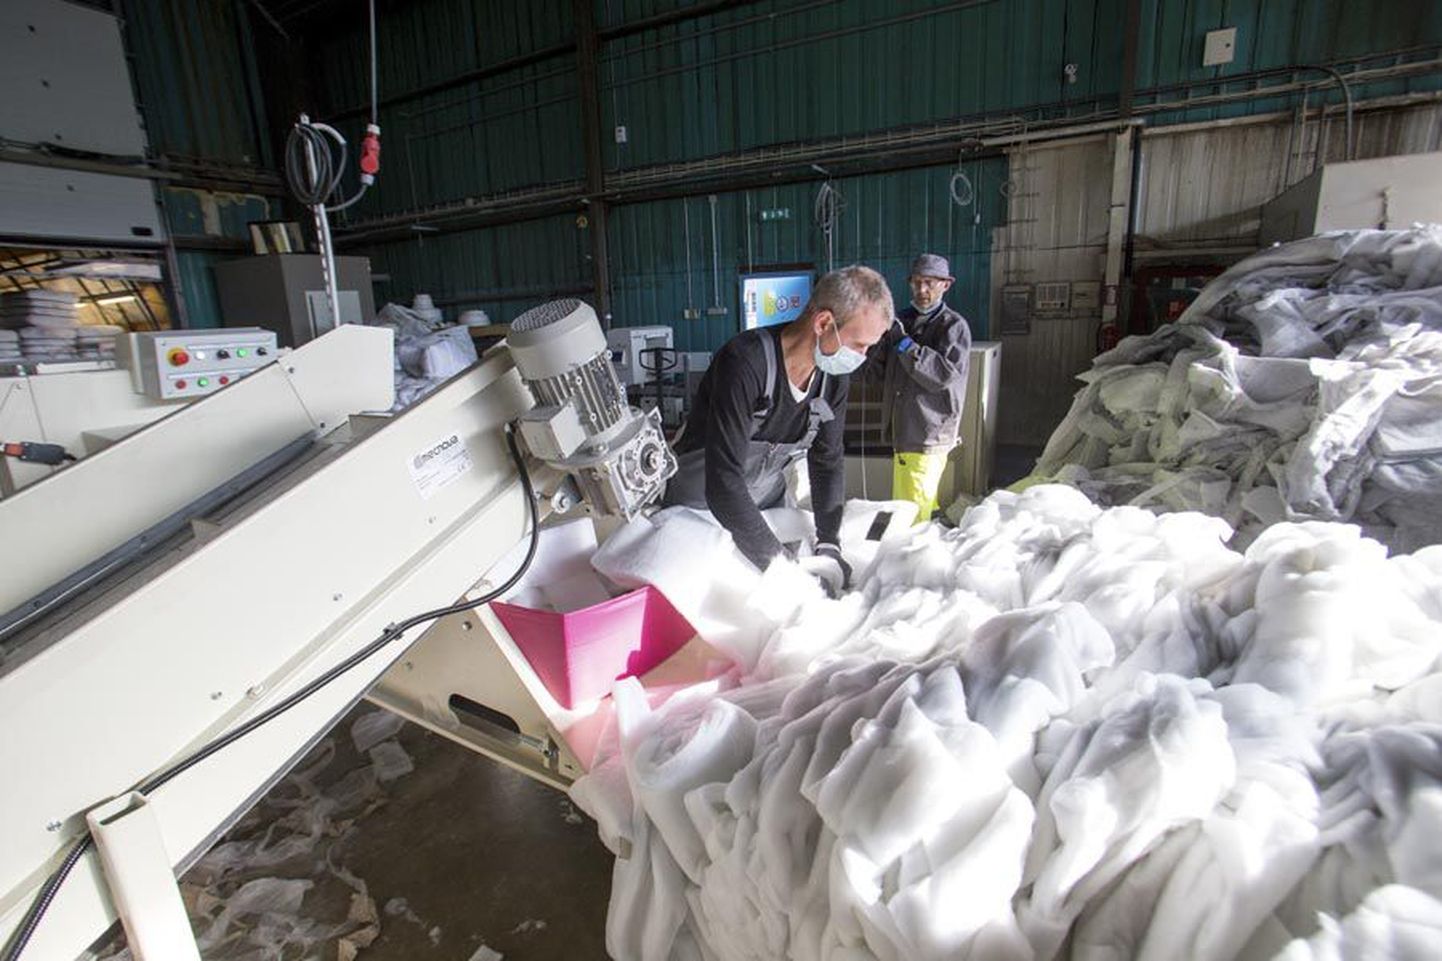 Tööstuslike tekstiilijäätmete ümbertöötamine algab kangatükkide purustamisega spetsiaalsetes lõikurmasinates. Hiljem taasavatakse materjali kiud, et neist saaks villalaadne mass.